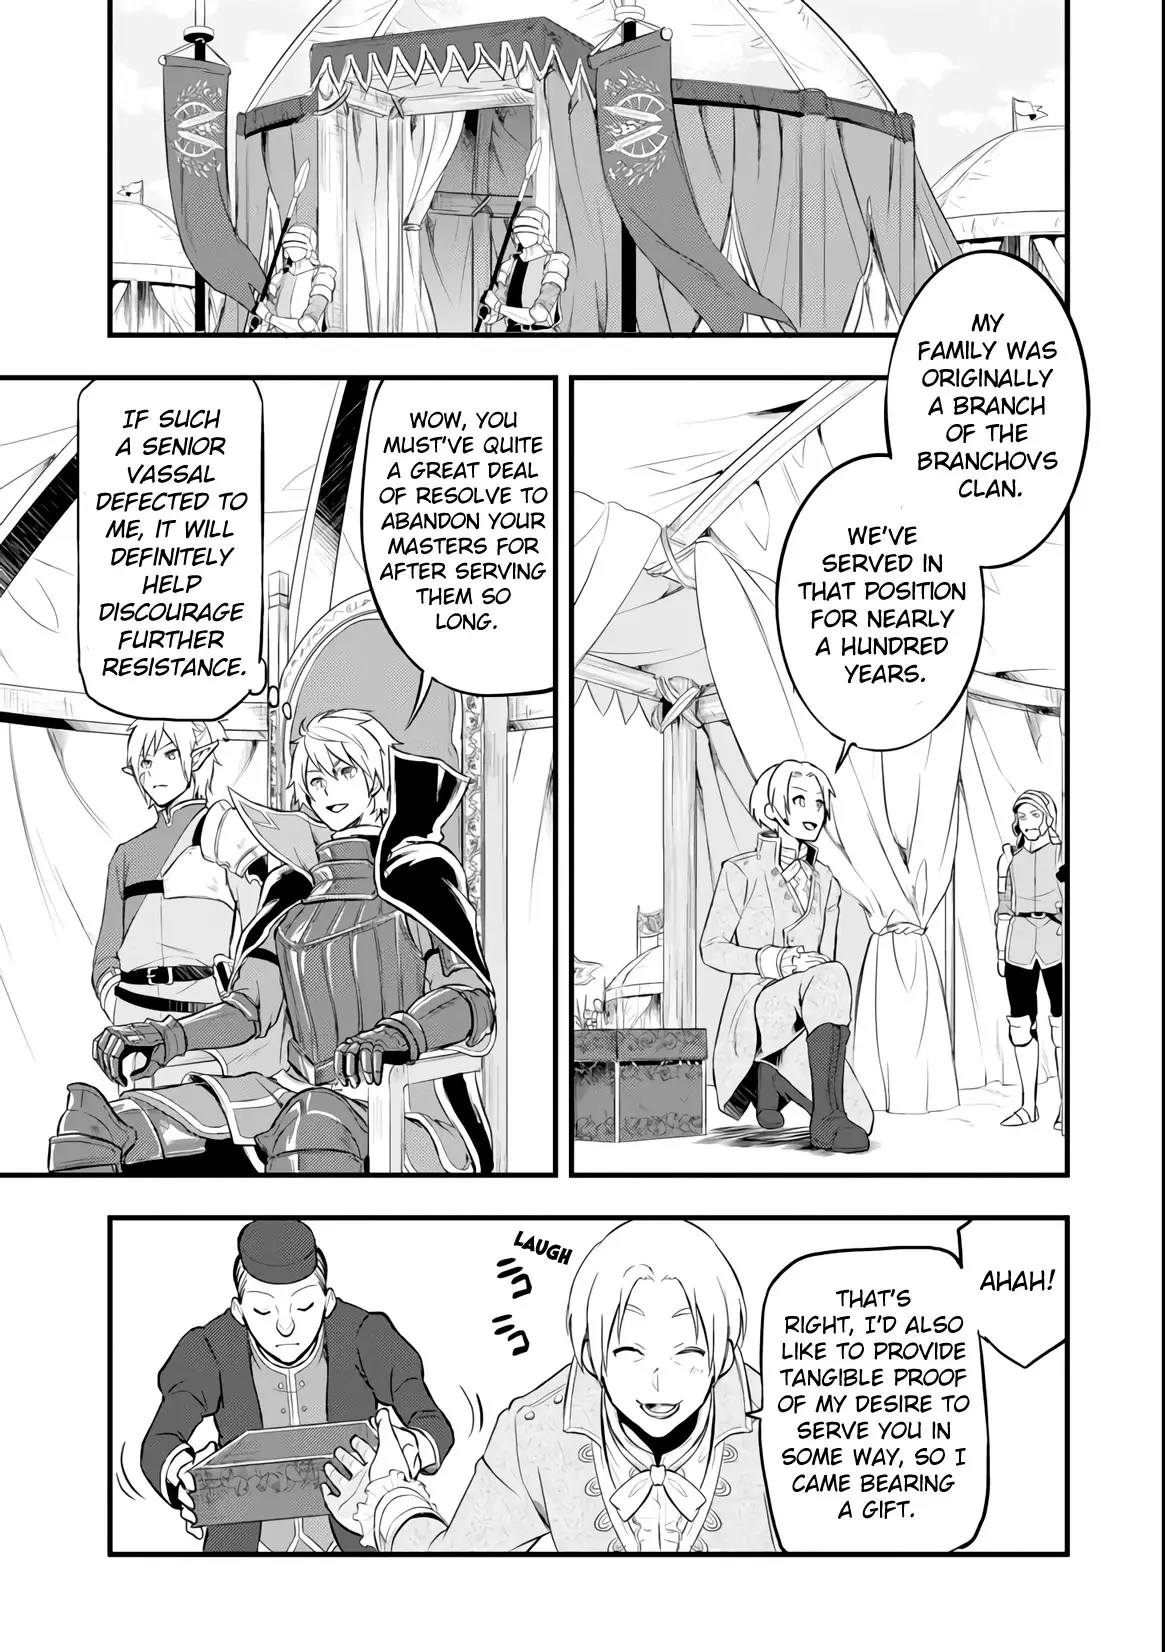 Mysterious Job Called Oda Nobunaga - 12 page 27-d8c8b35a